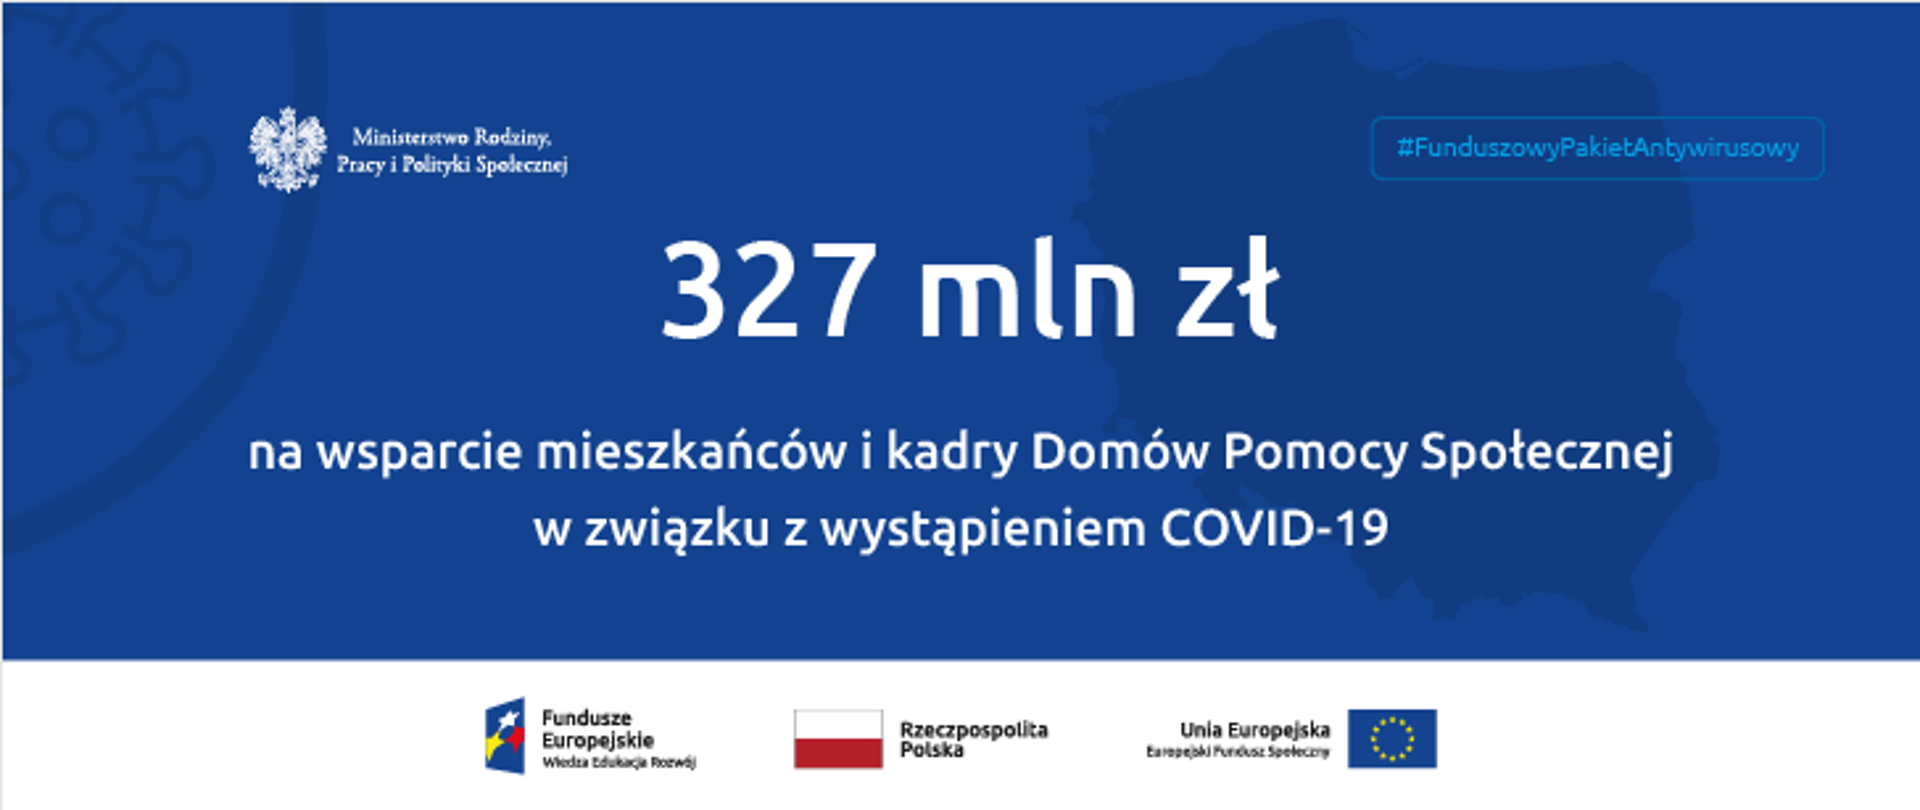 327 mln zł na wsparcie DPS